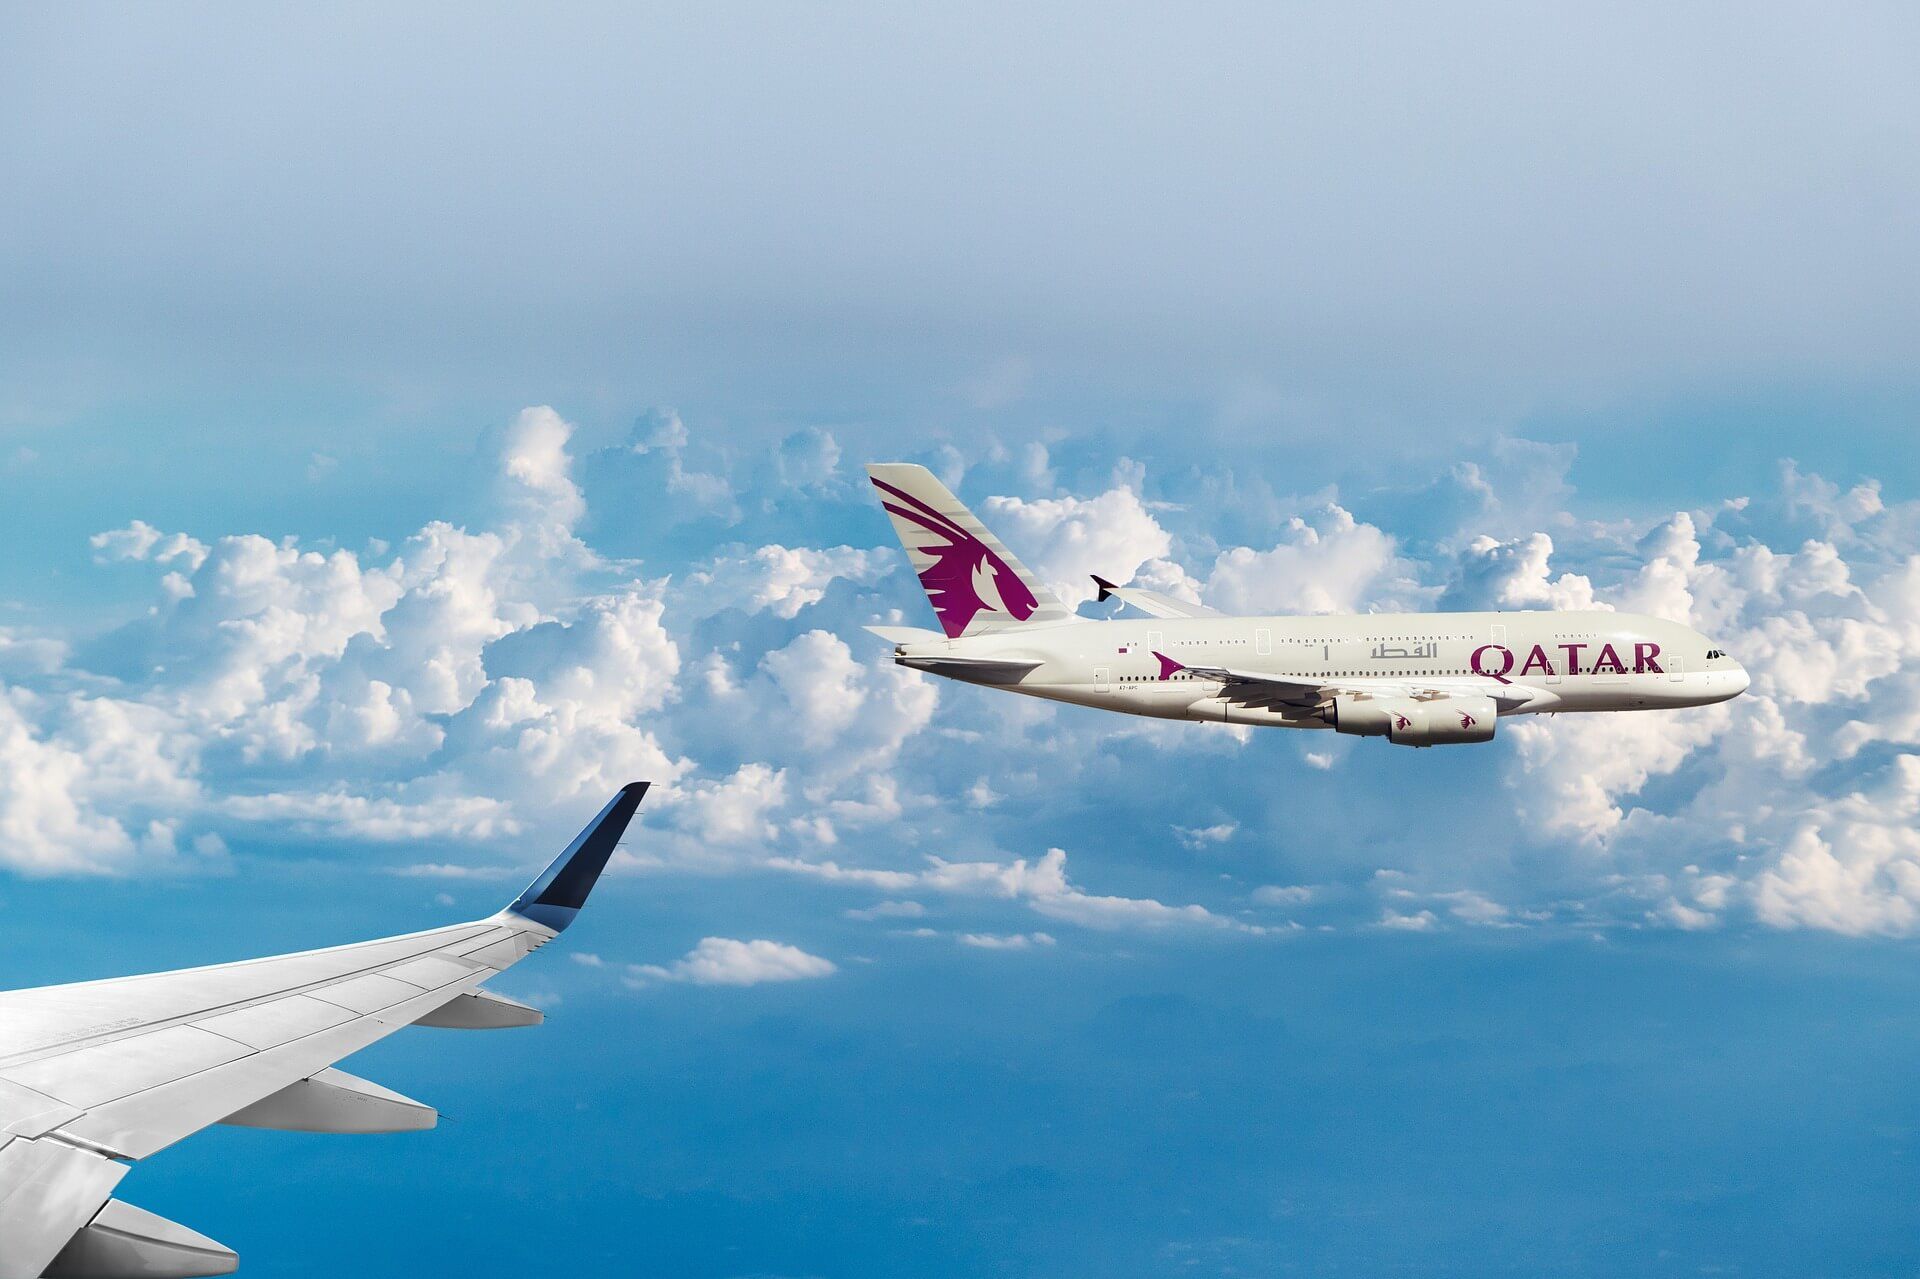 najlepsze linie lotnicze świata 2021 – Qatar Airways